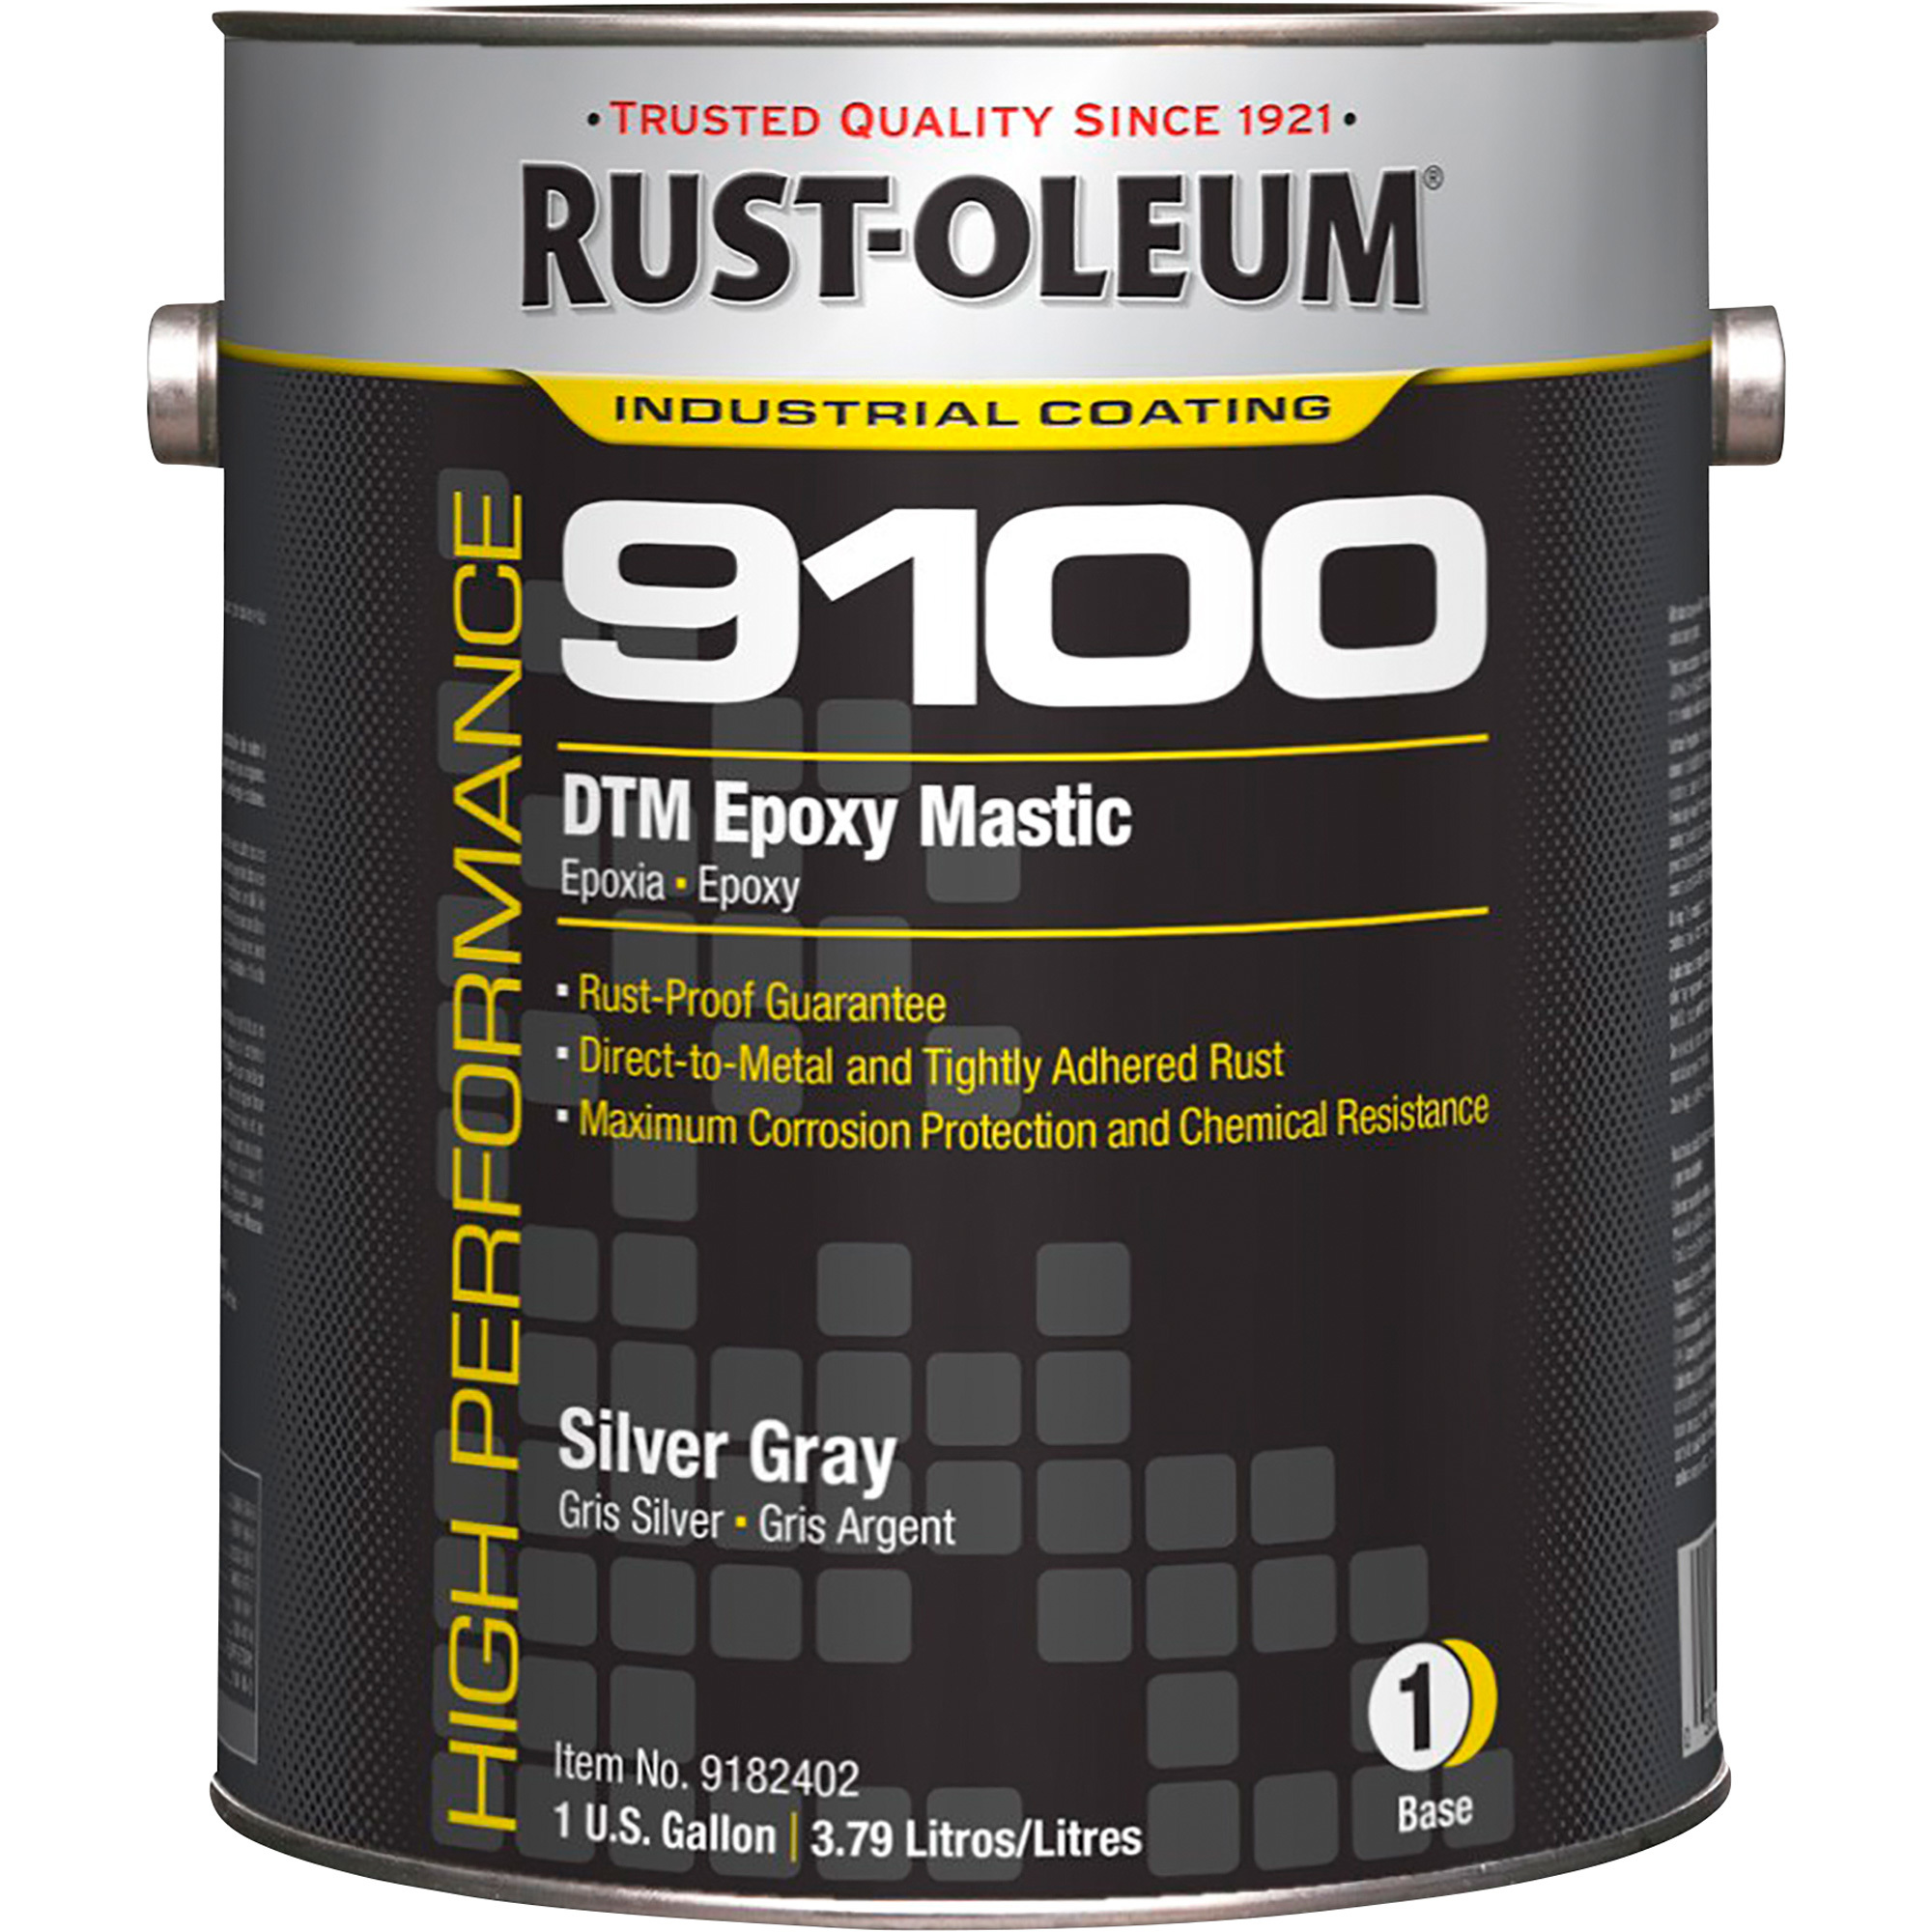 Rust-Oleum 9100 Epoxy, (1) 5-Gallon Pail, Silver